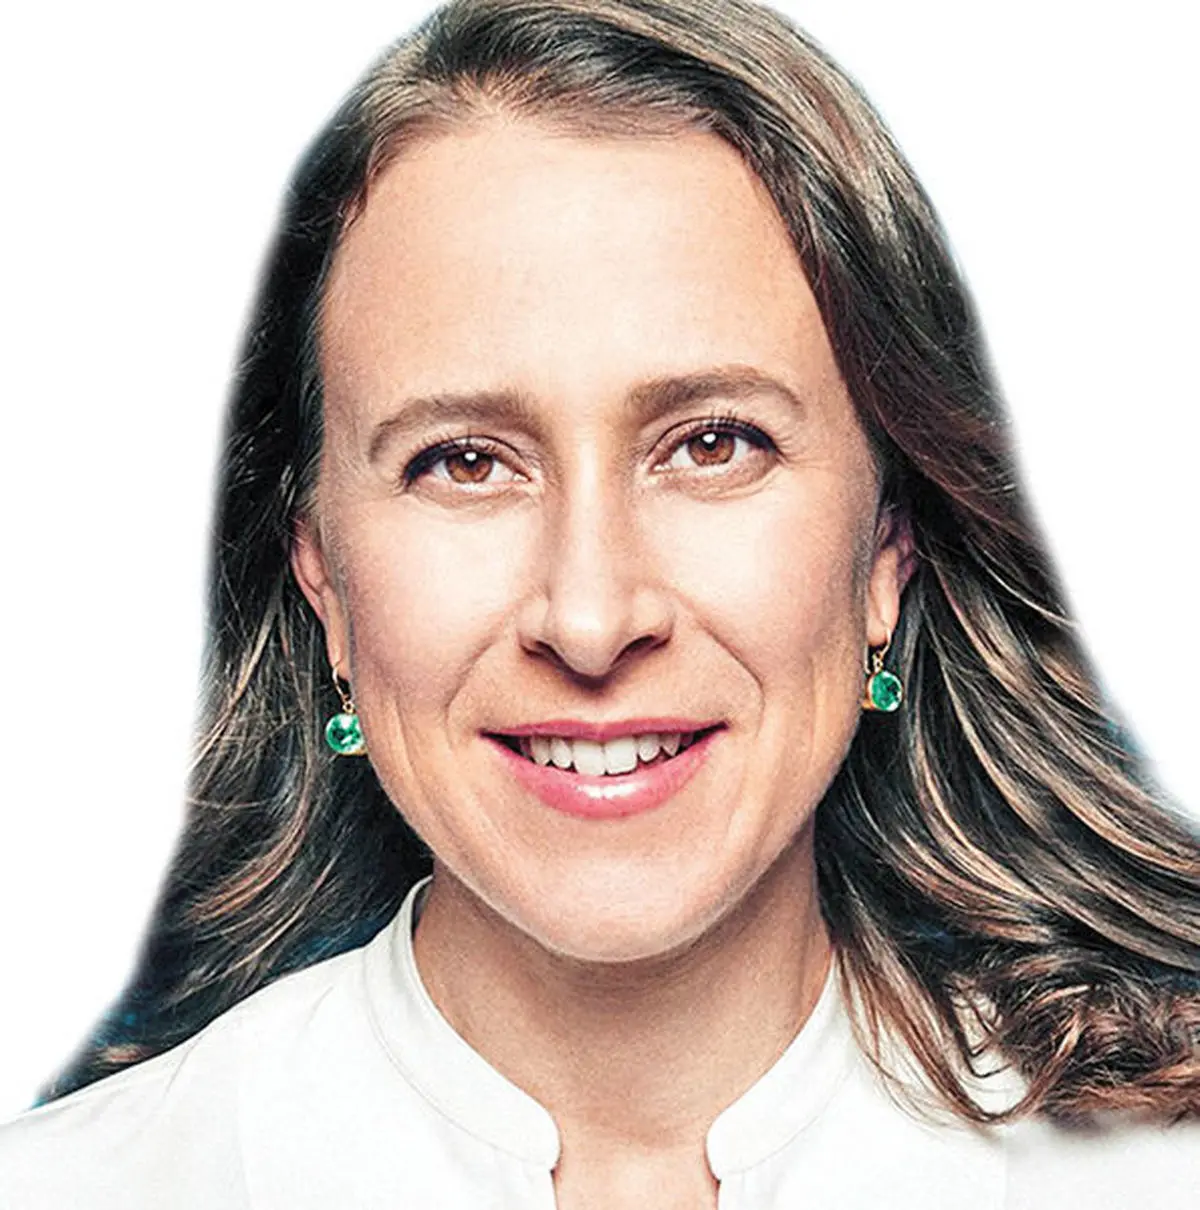 هوشمندی و سرسختی در برابر موانع قانونی | تجربه آنه ووجیتسکی، مدیر عامل شرکت ۲۳andMe